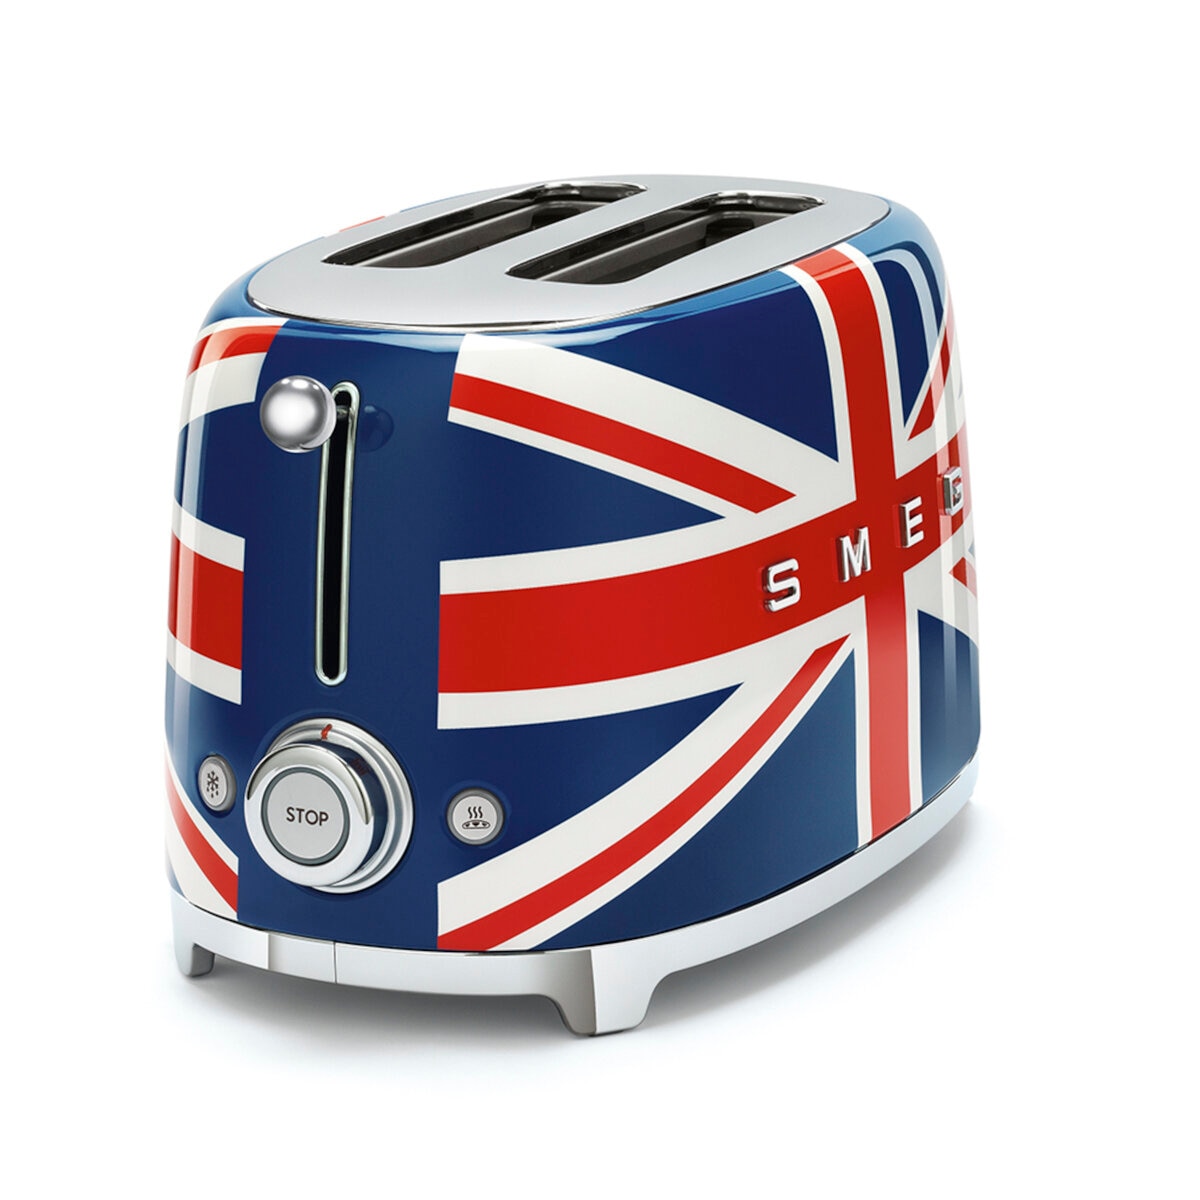 スメッグSMEG トースター　イギリス国旗柄